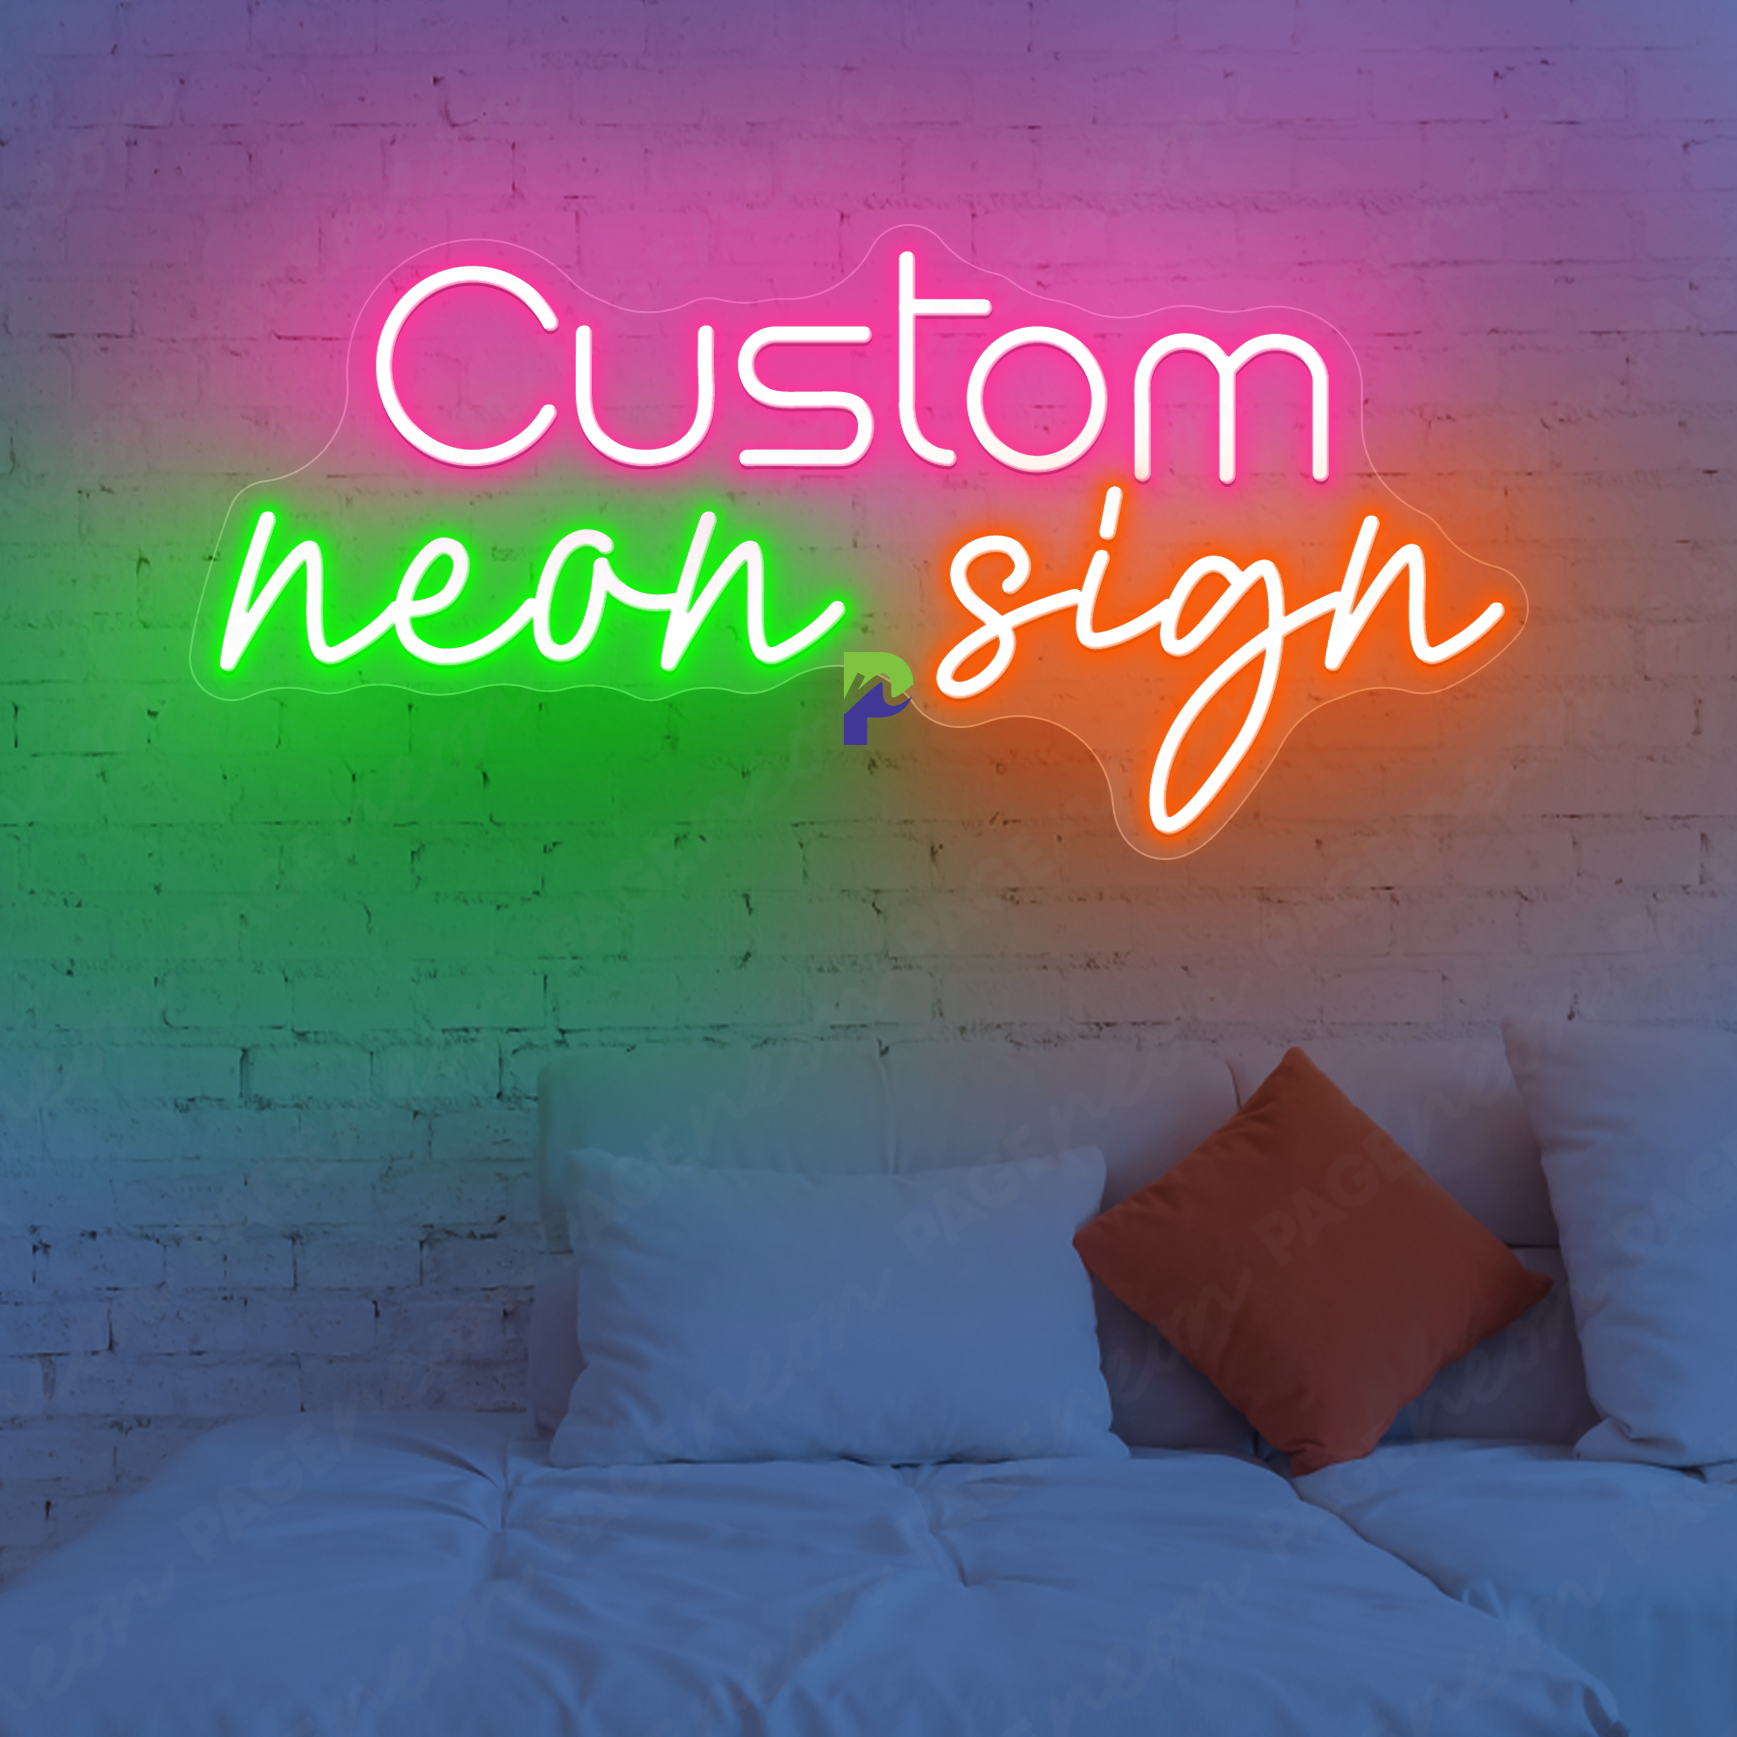 Custom Neon Sign Family Name Led Light